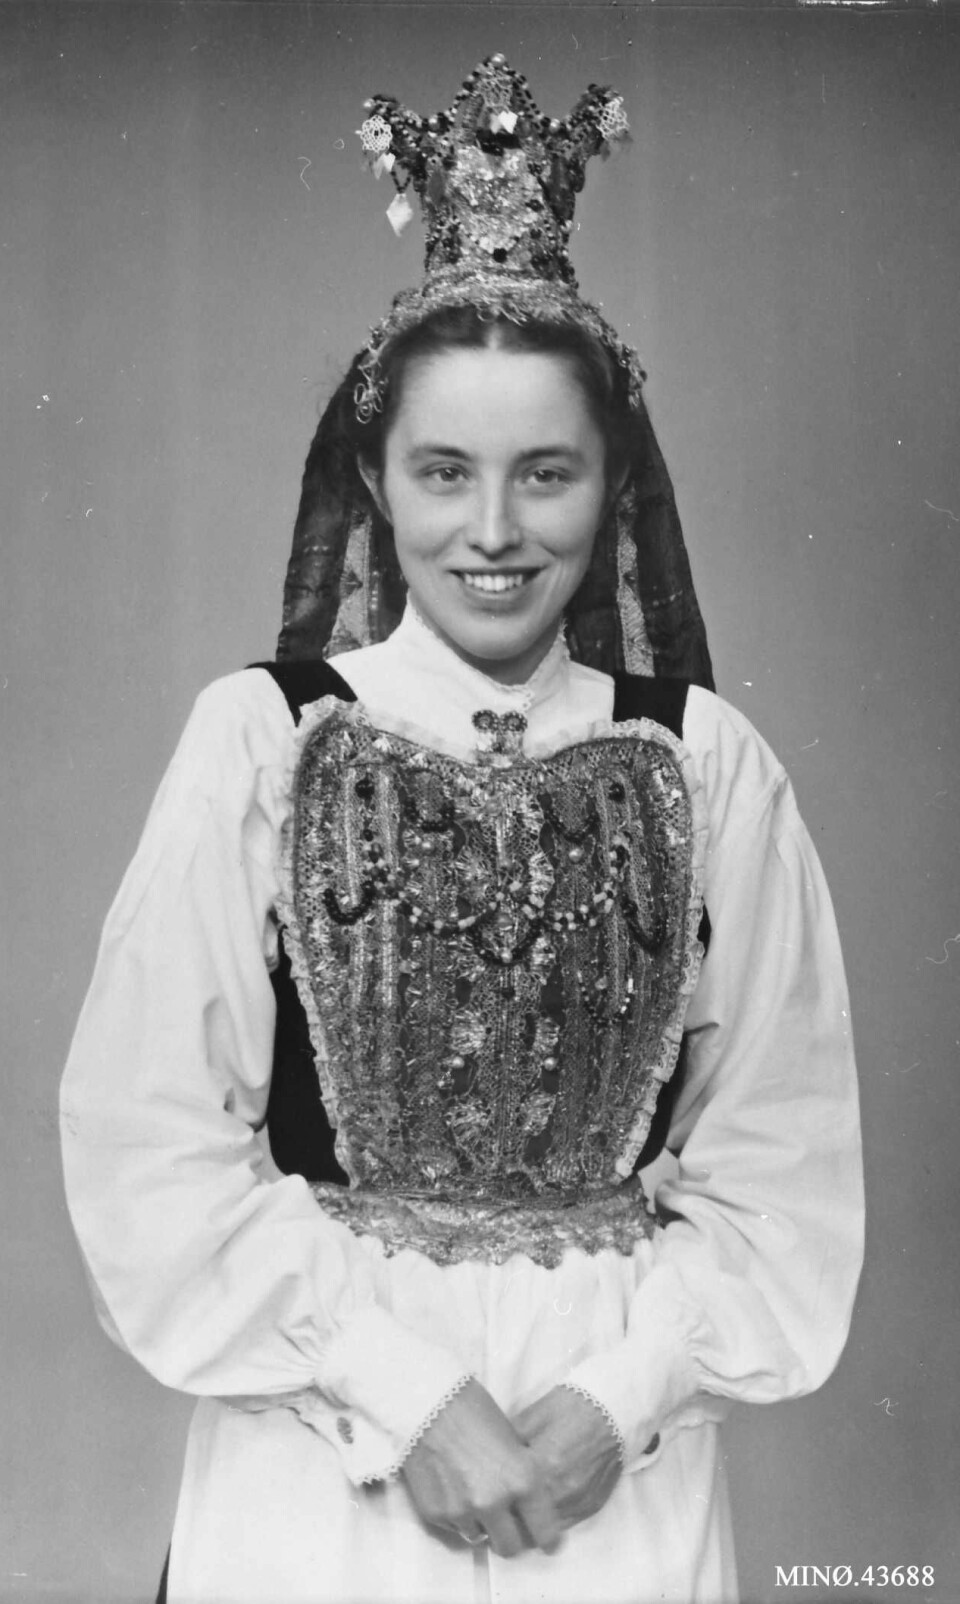 Jente fra Alvdal pyntet som brud med brudekrone i 1930.